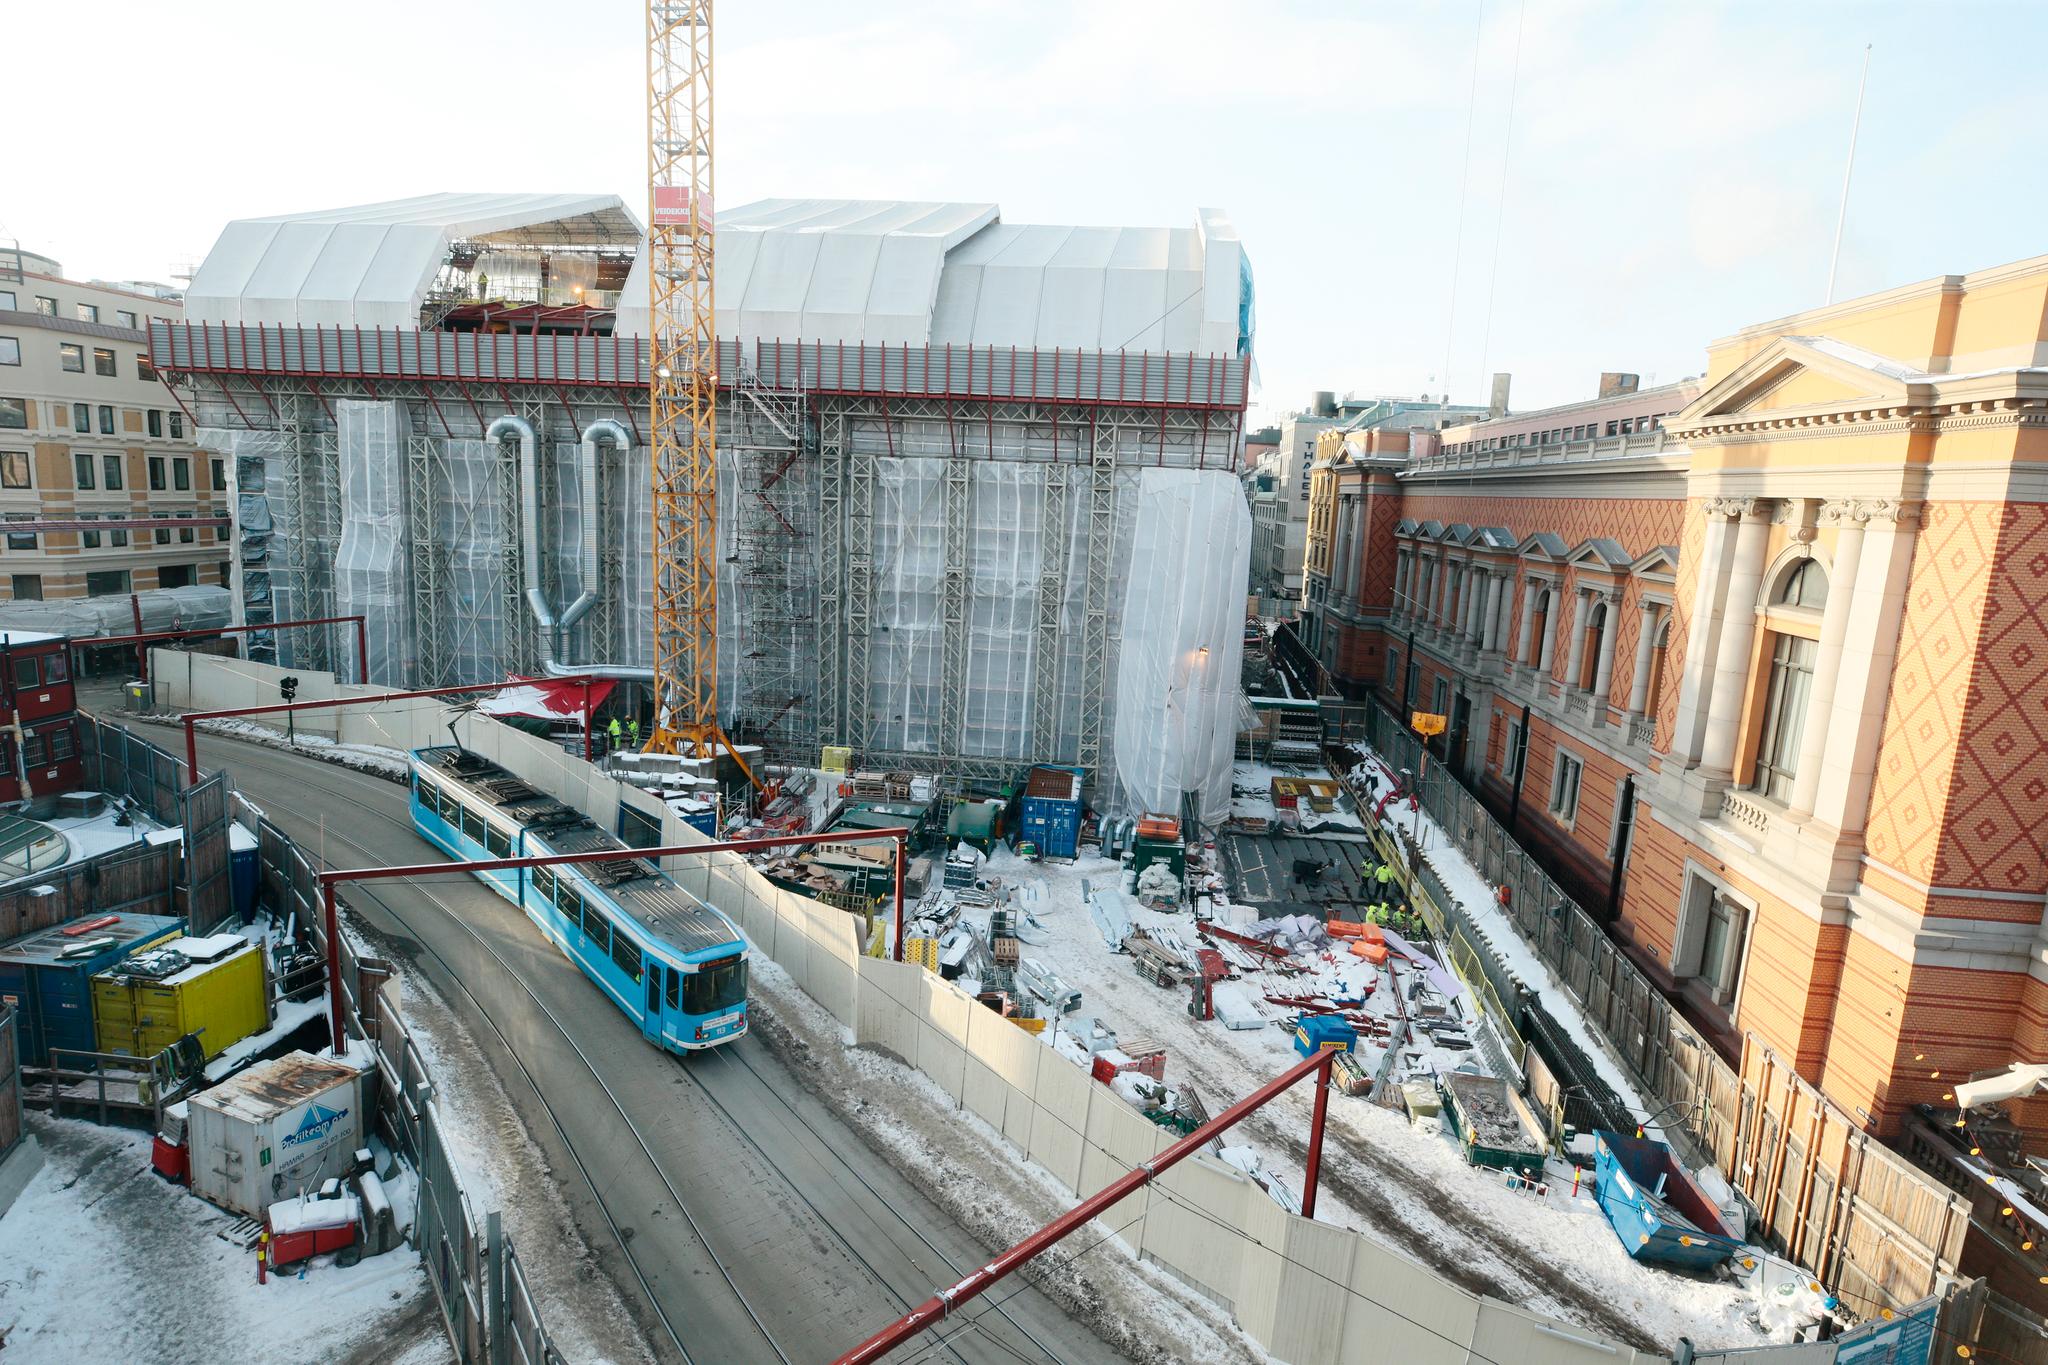 Stortingets byggeprosjekt i Oslo sentrum inkluderer renovering av en bygård, bygging av nytt post- og varemottak og en 250 meter lang innkjøringstunnel til sistnevnte. Prosjektet har vokst i omfang og kostnad fra 70 millioner kroner i 2011 til 2320 millioner i 2018.